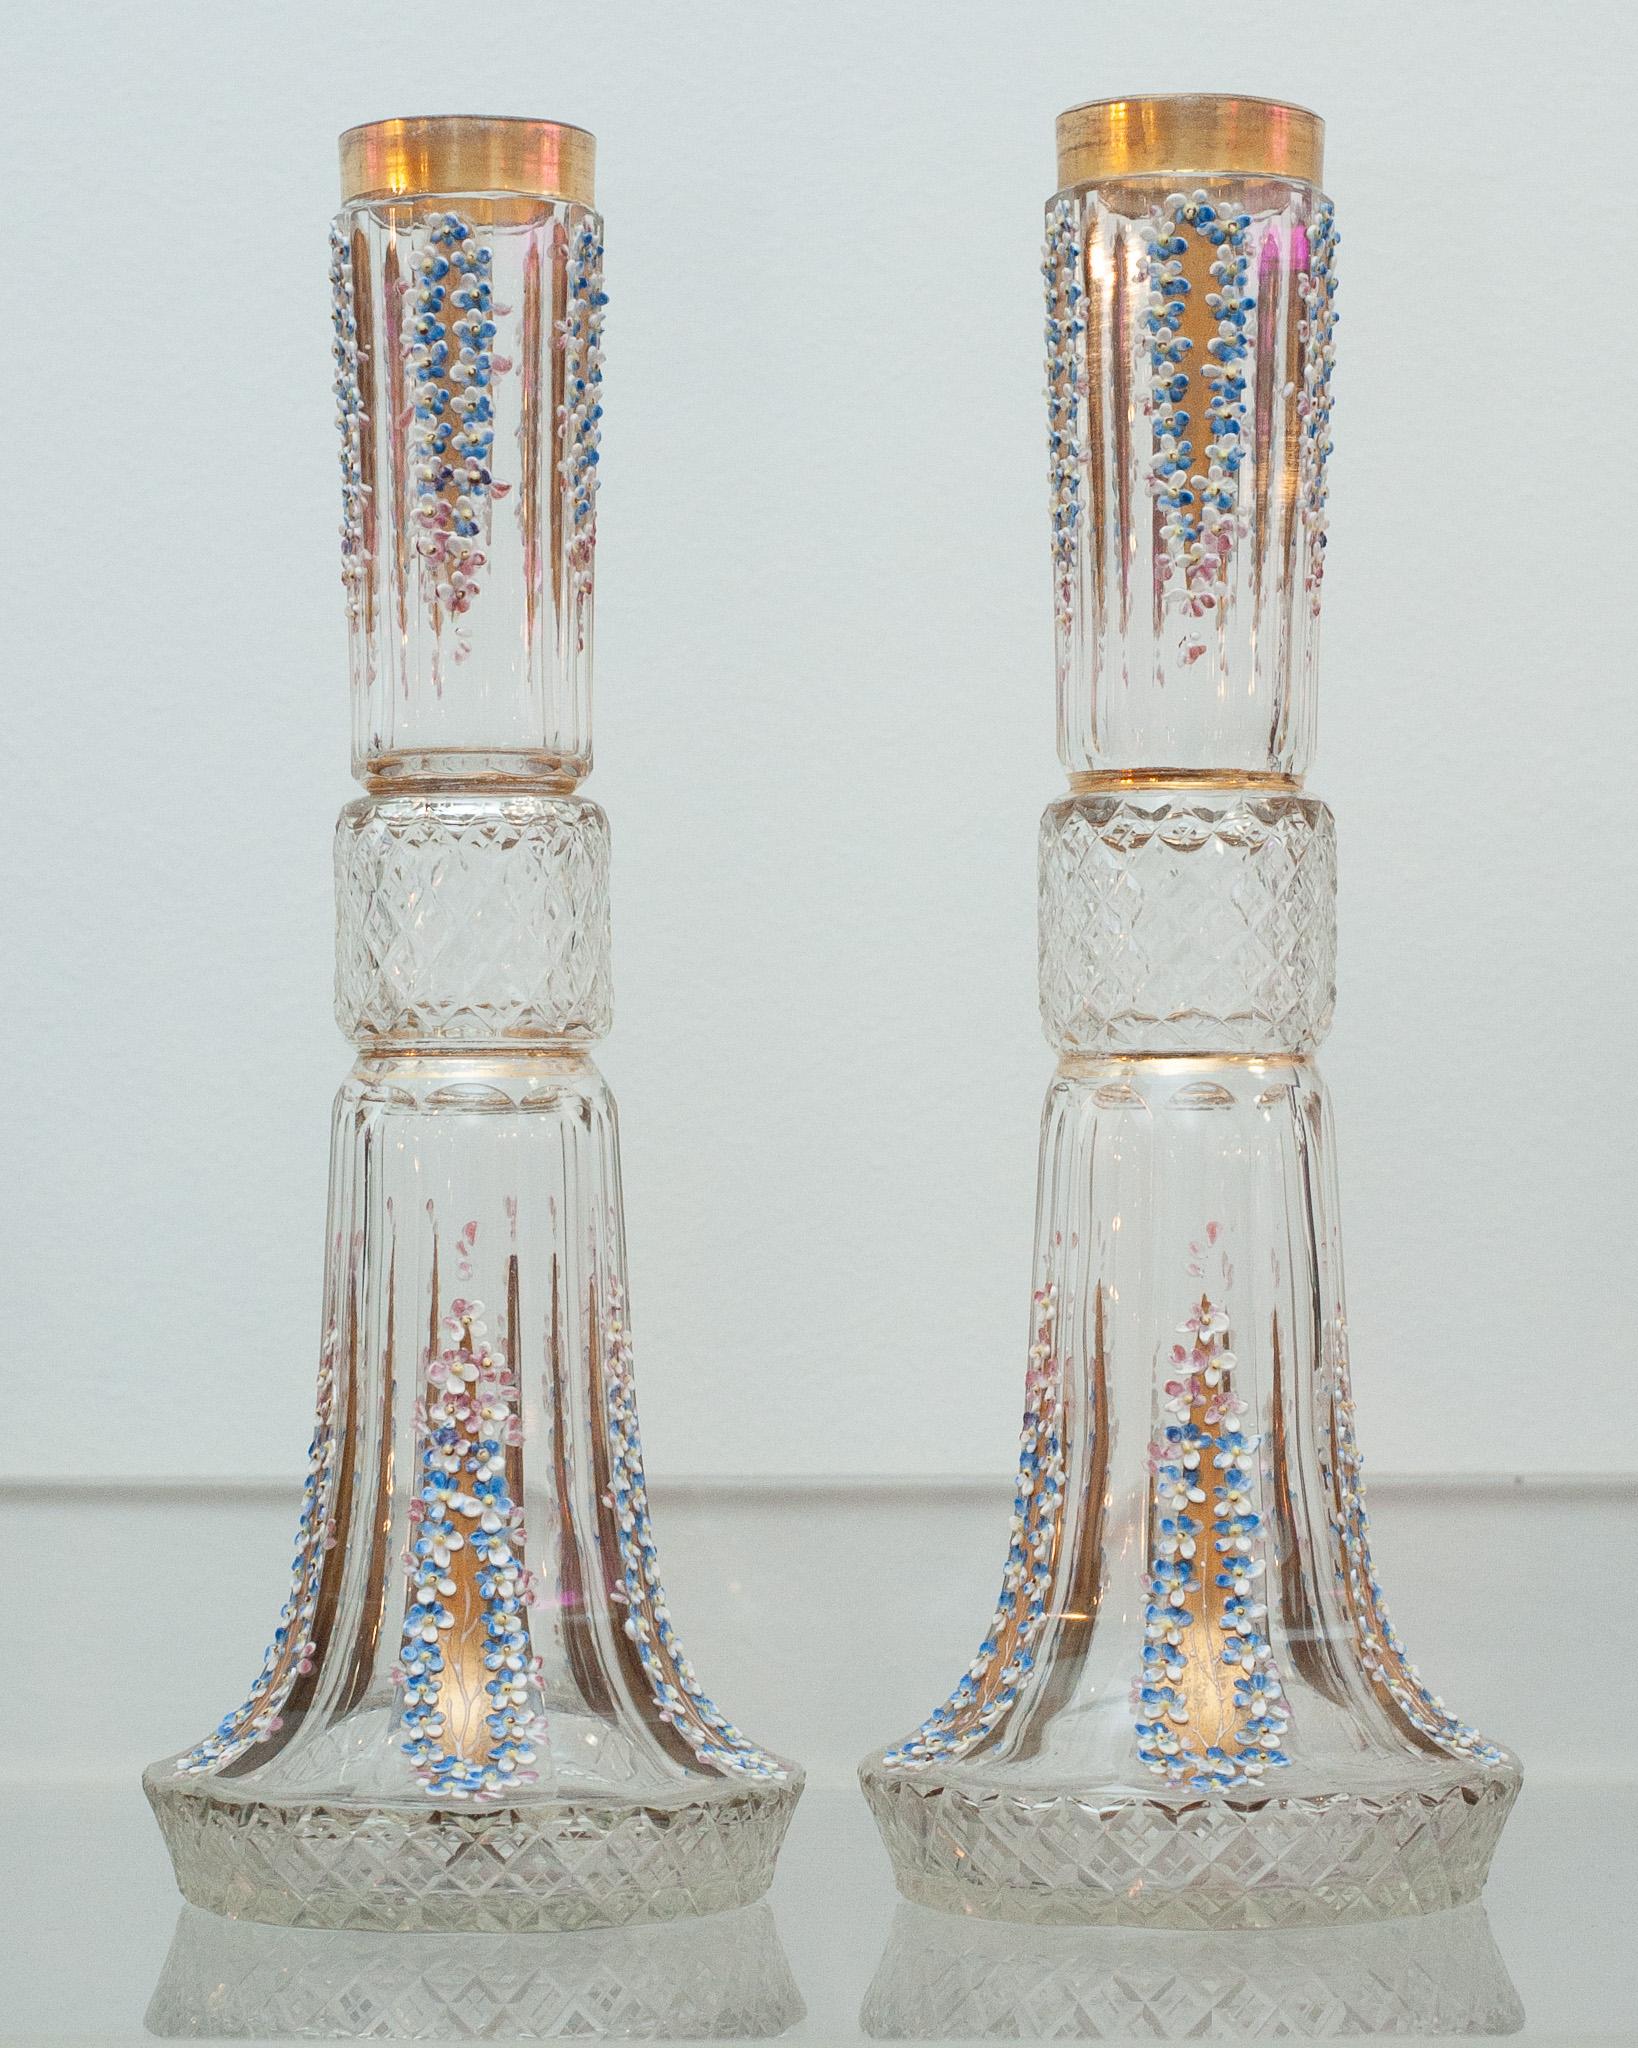 Une élégante paire de vases anciens en cristal taillé et fleuri, peints à la main, avec des détails dorés. 